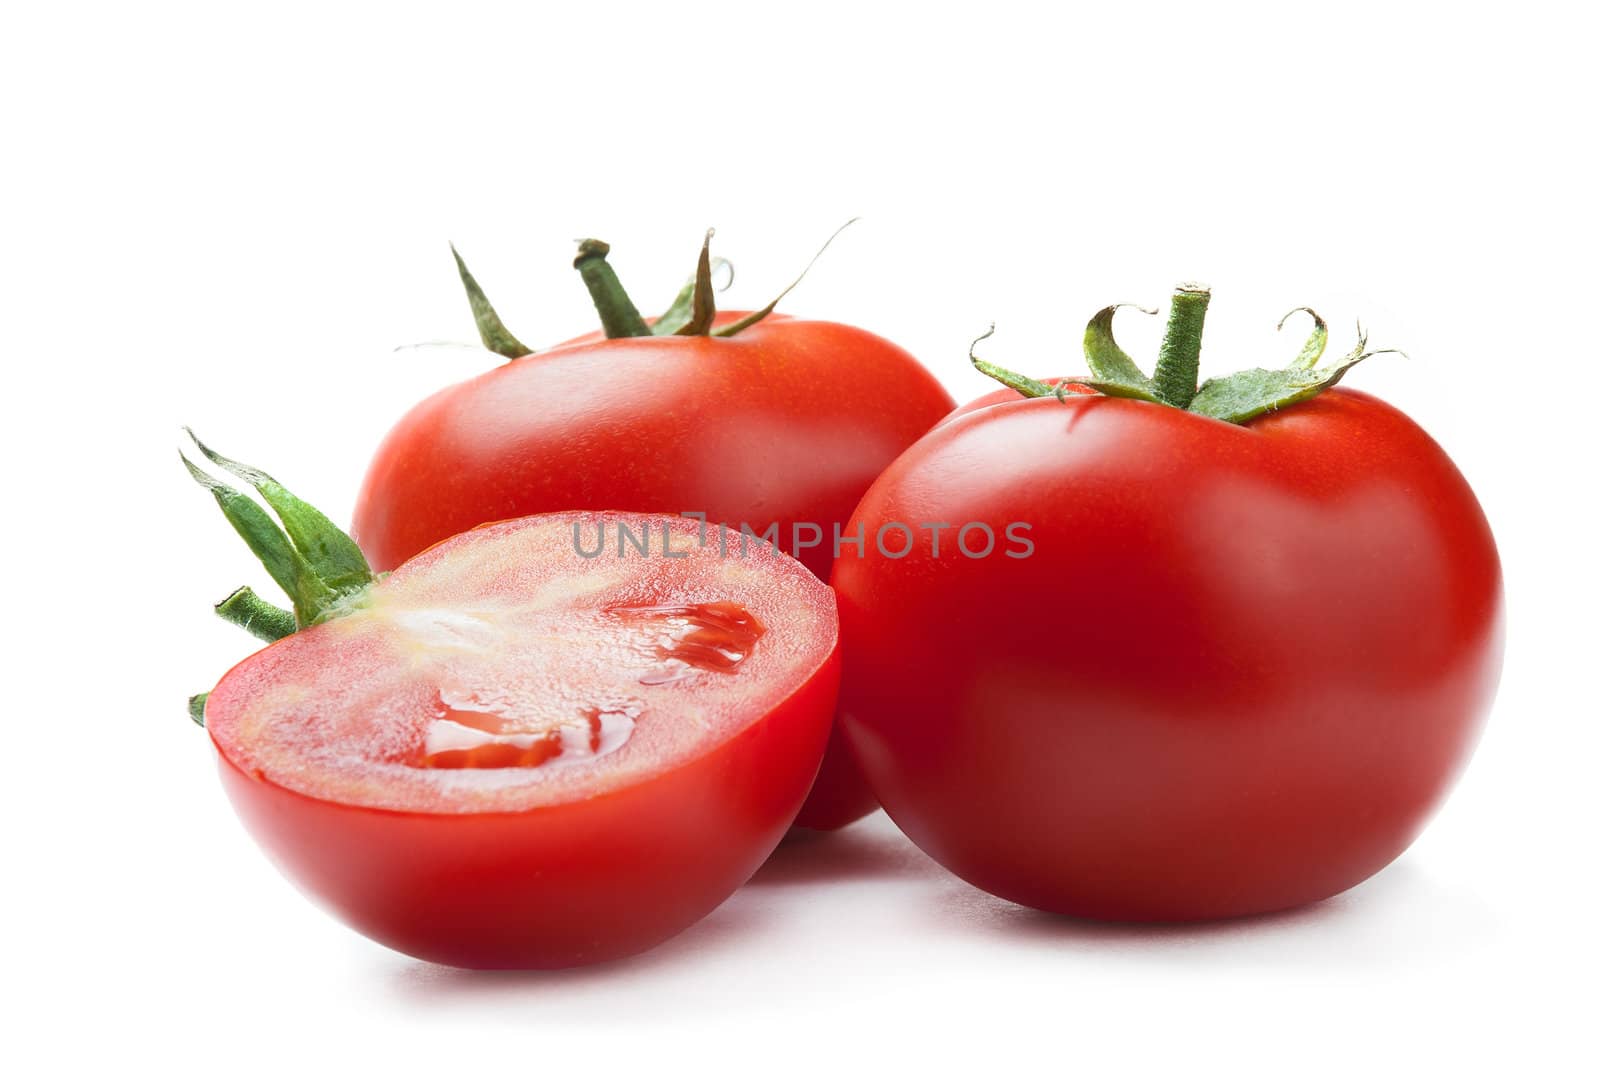 tomates on white background by GennadiyShel